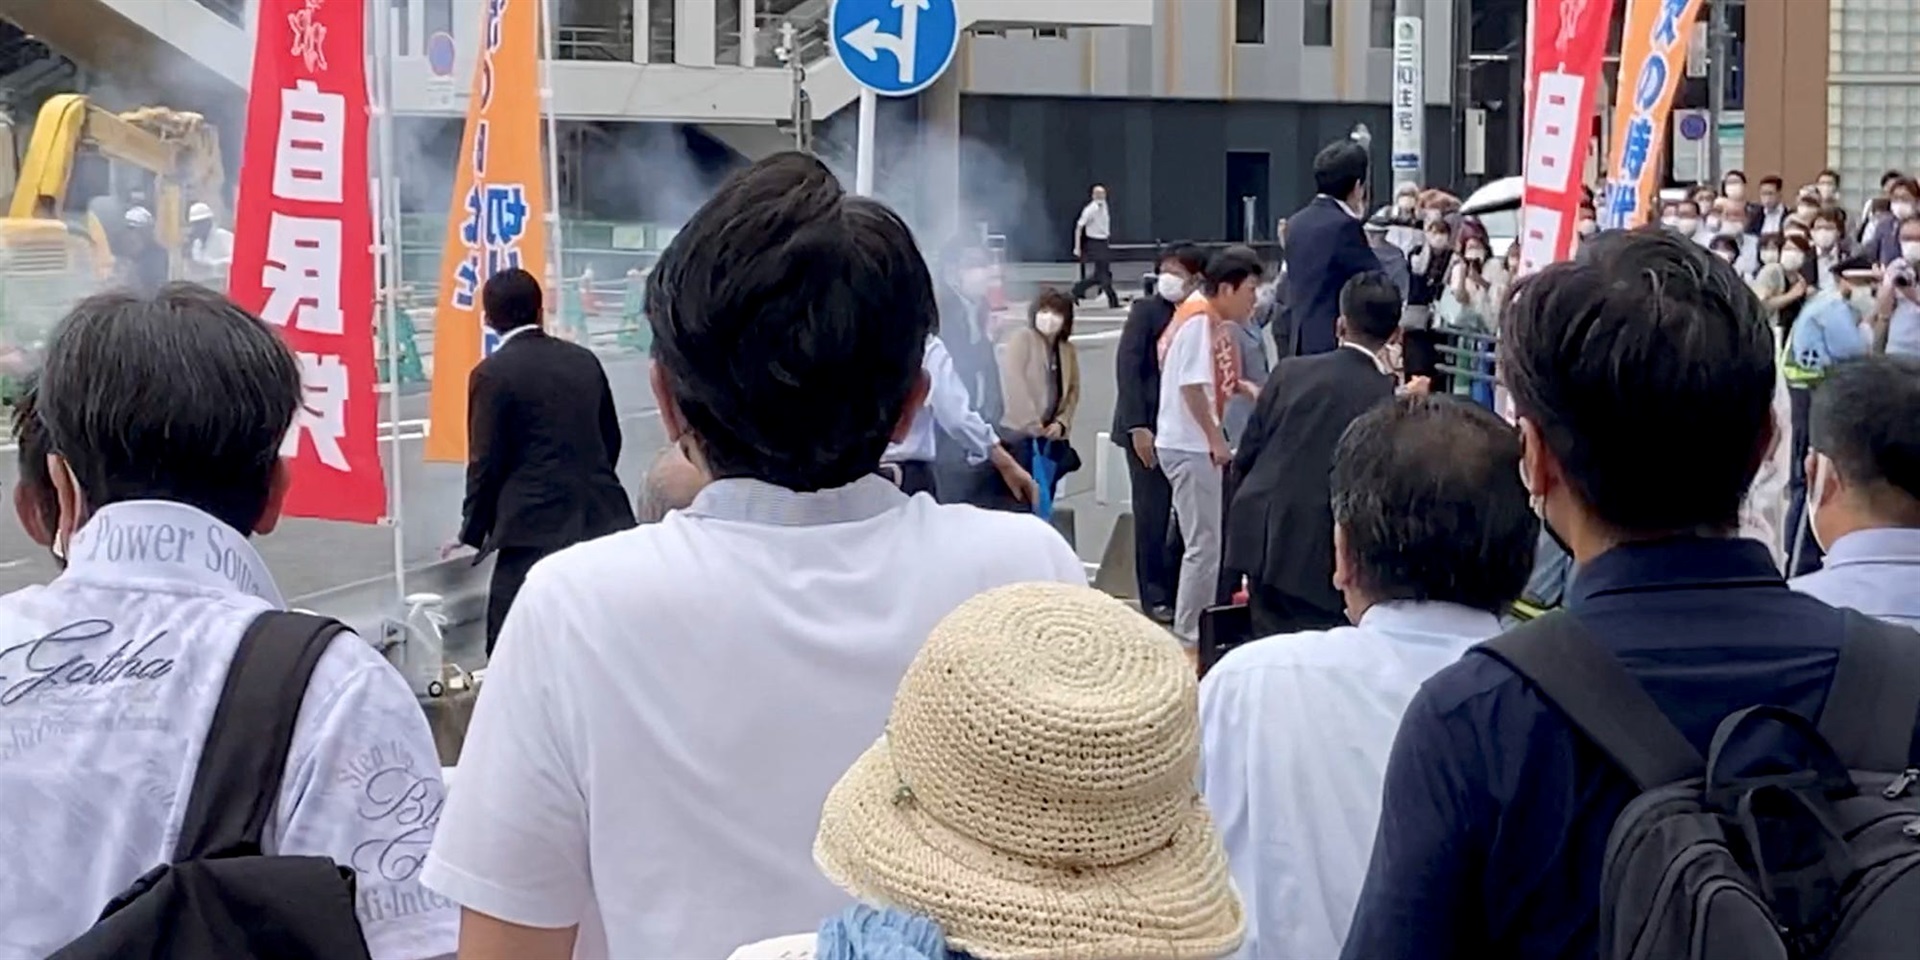 Videolar, Shinzo Abe'nin suikasttan önce küçük güvenlik anlarıyla yanında duran şüpheliyi vurduğunu gösteriyor